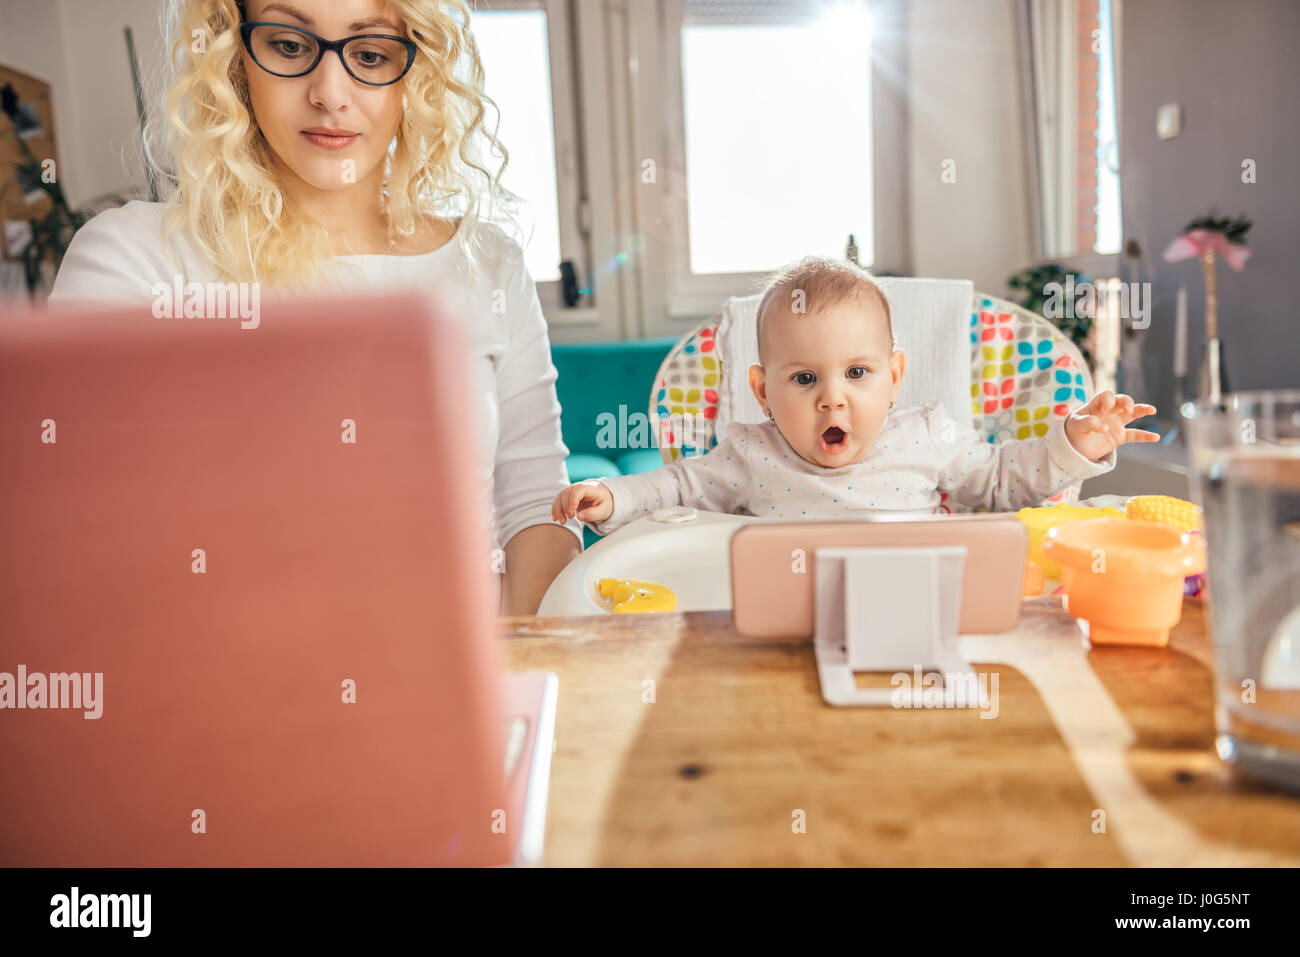 Mutter trägt Brille Büro am Laptop zu Hause arbeiten und kümmert sich um ihr baby Stockfoto